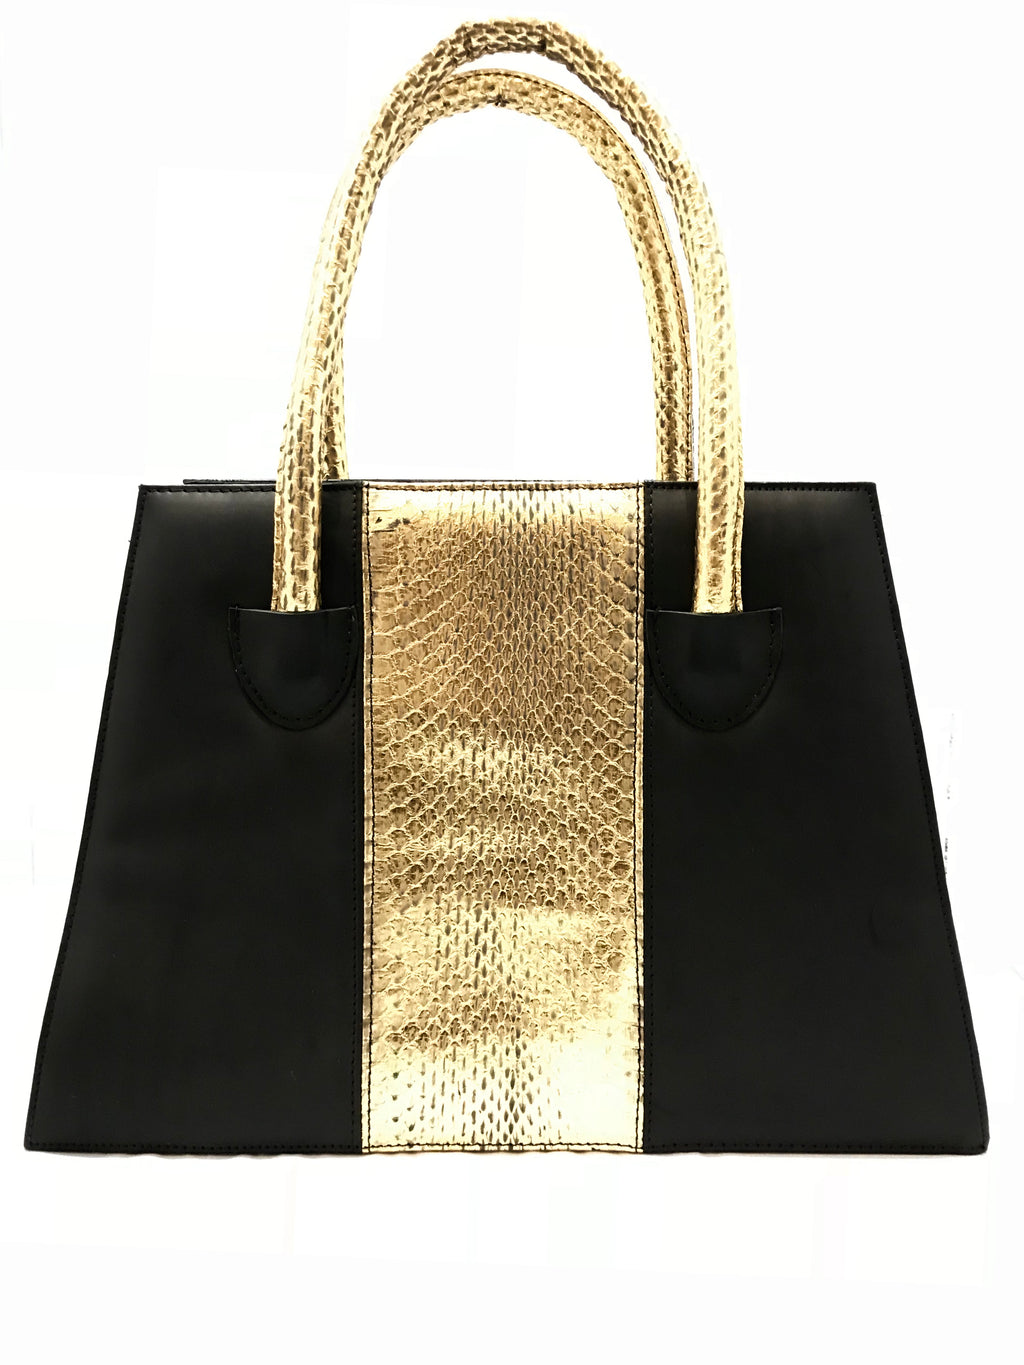 Black and Gold Wonder Bag with Gold Snake Skin Belt